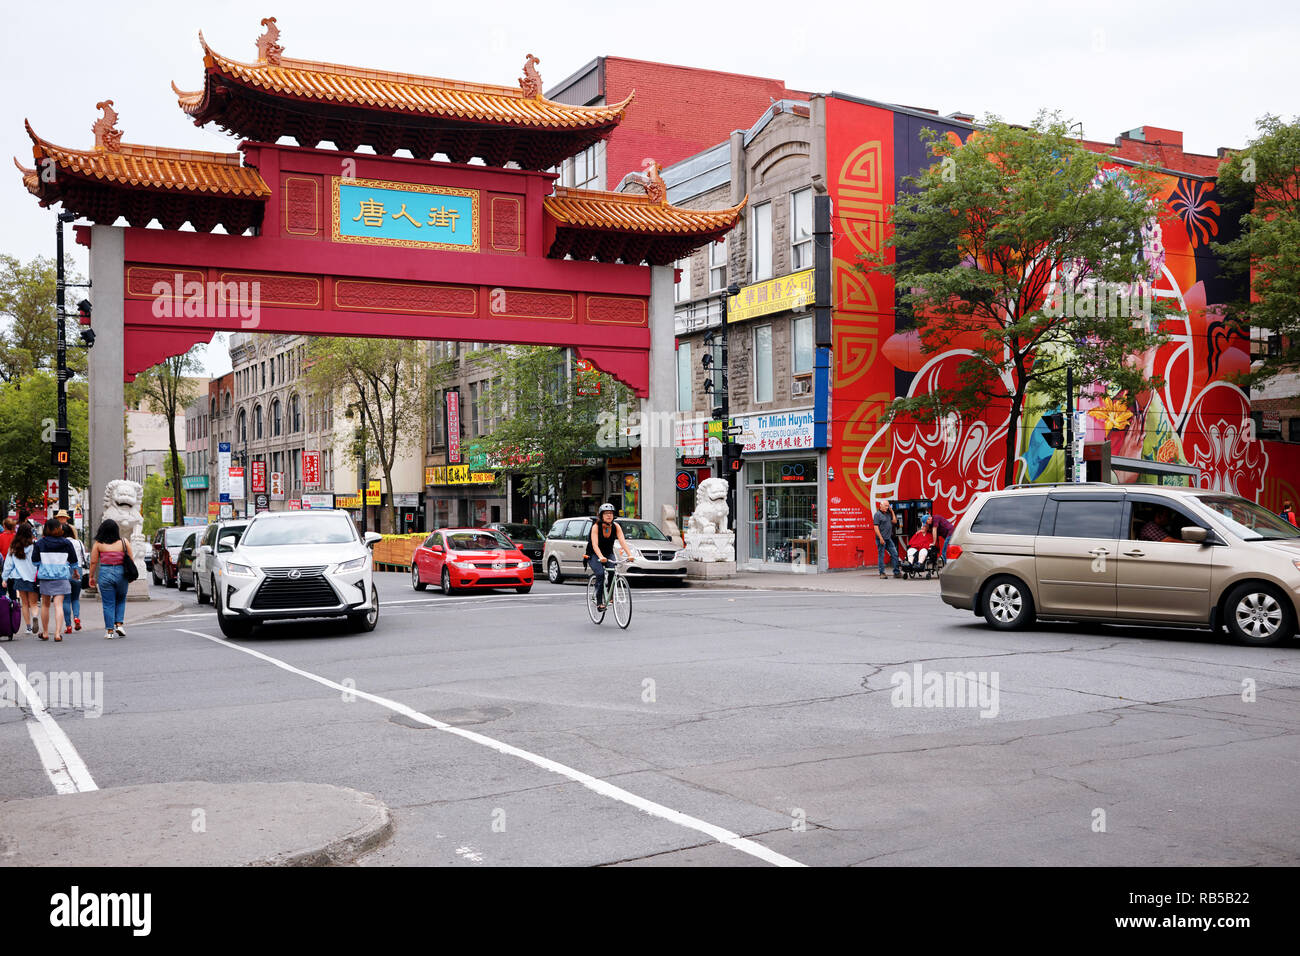 Die chinesische arch Tor, Menschen und Verkehr am Eingang zu China Town über st-Laurent Street in Montreal, Quebec, Kanada Stockfoto